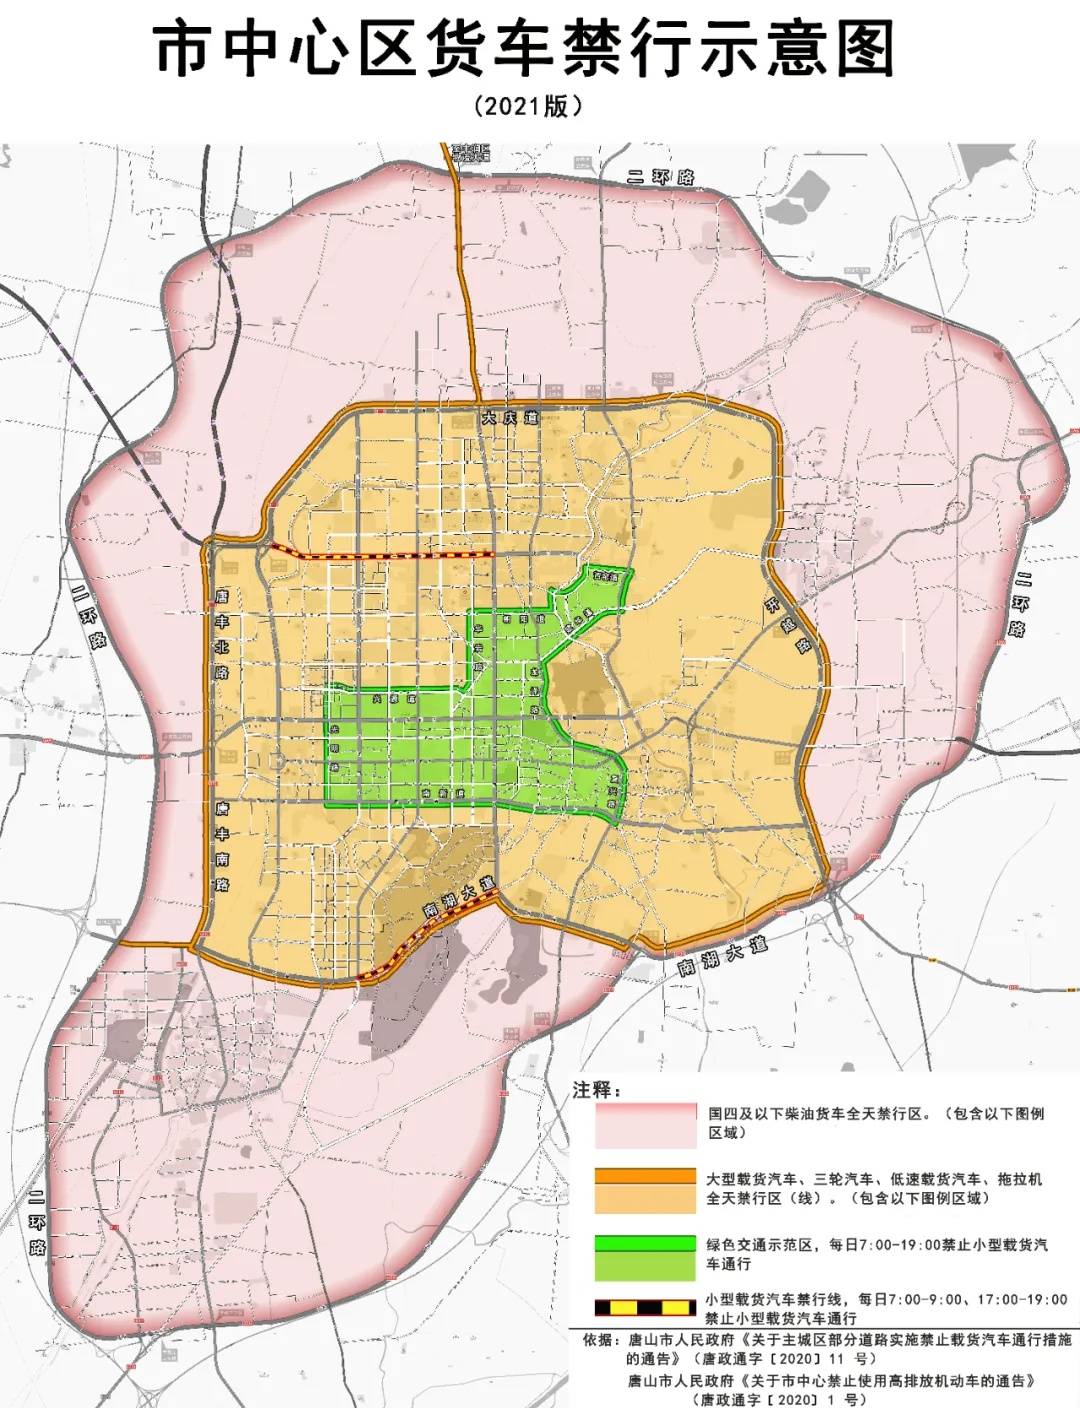 唐山市中心区货车禁行示意图(2021版)jpg